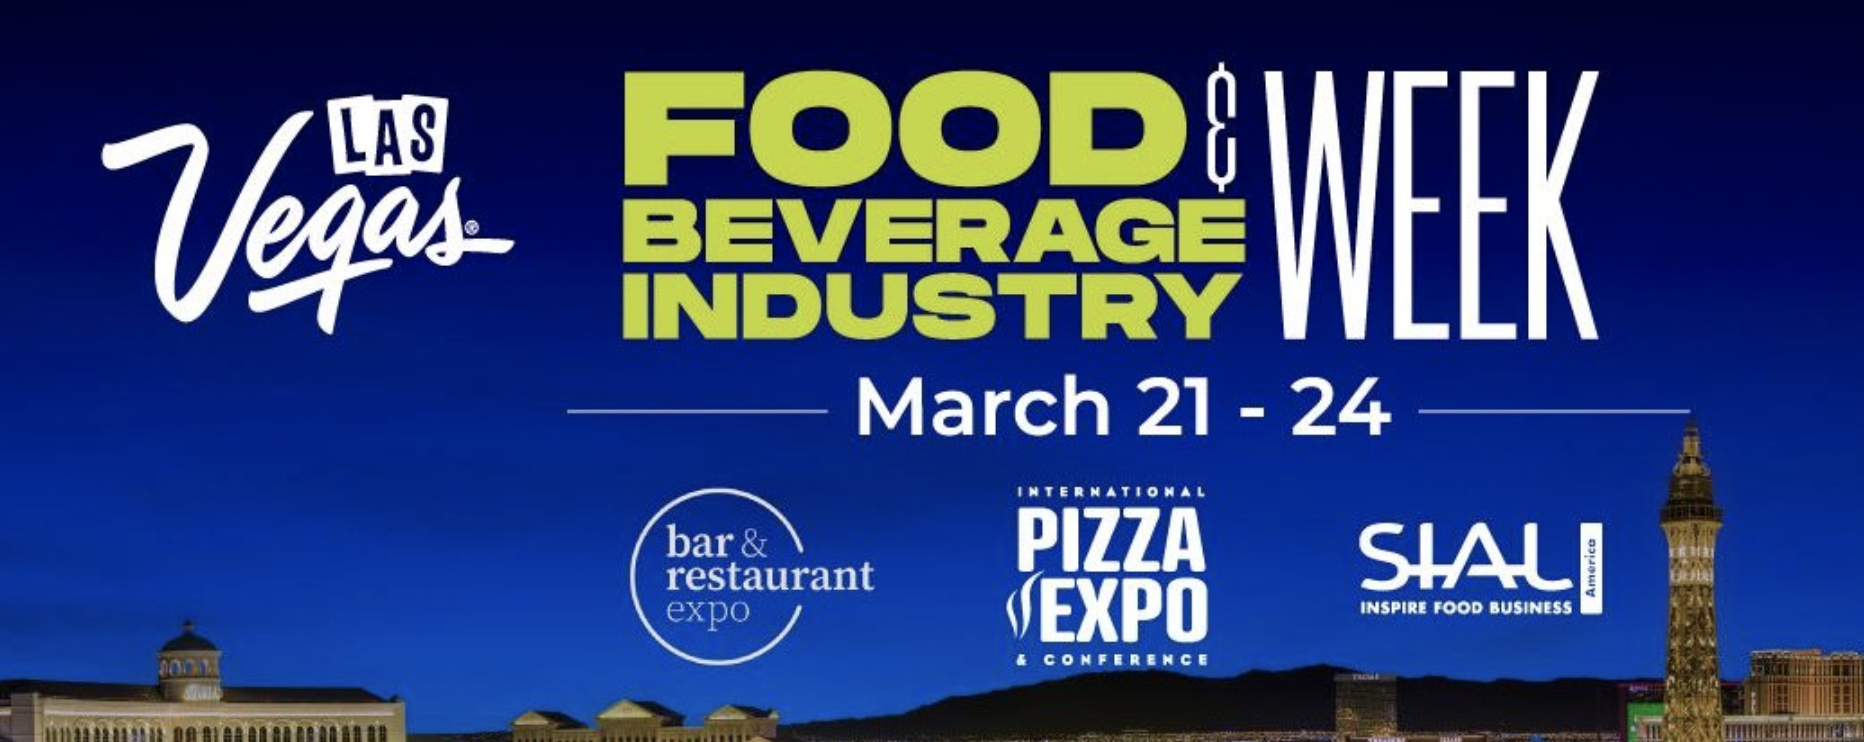 Las Vegas Food  Beverage Industry Week